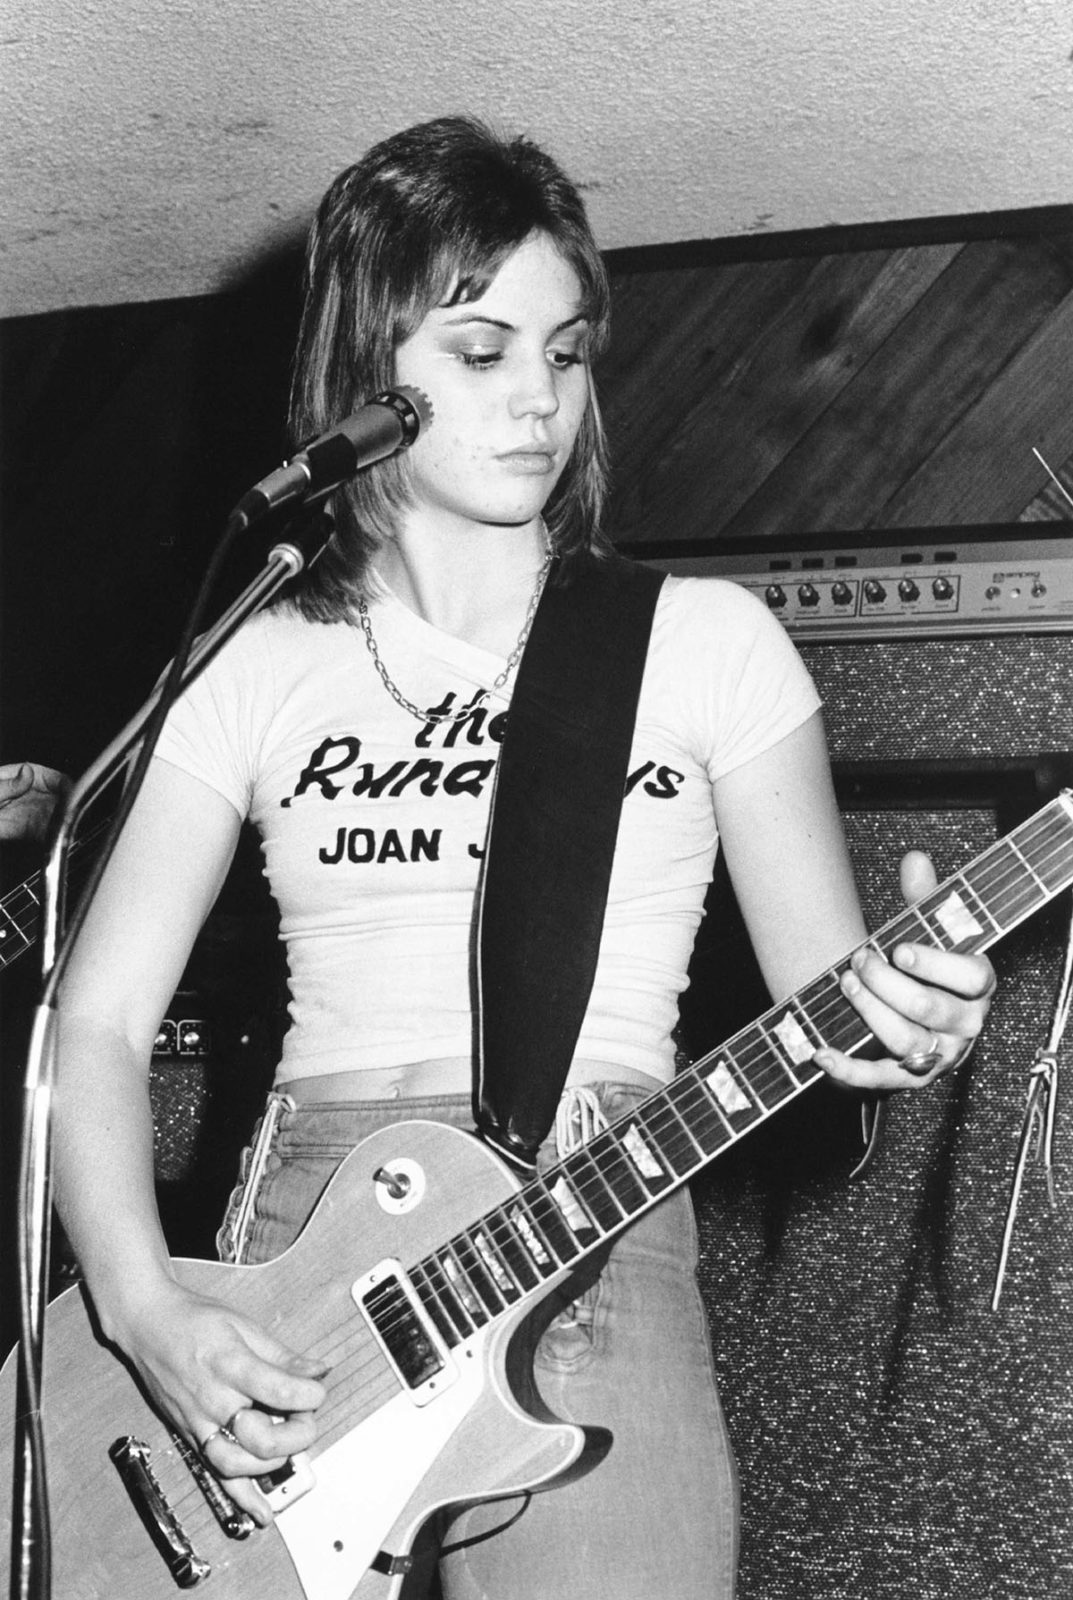 Joan Jett, 1976